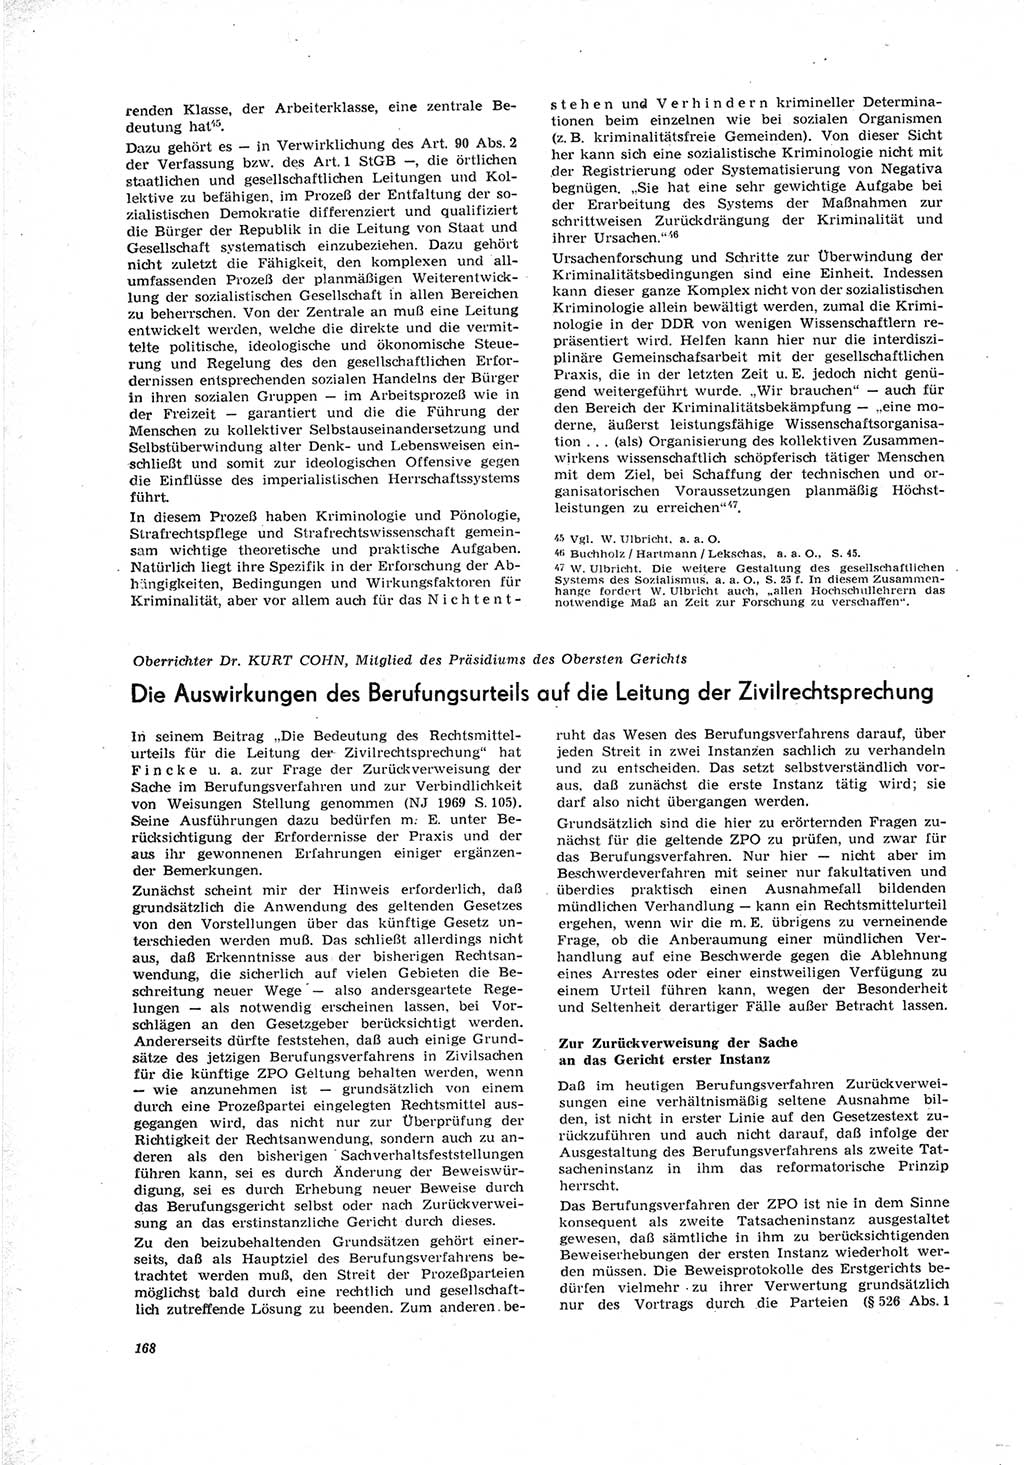 Neue Justiz (NJ), Zeitschrift für Recht und Rechtswissenschaft [Deutsche Demokratische Republik (DDR)], 23. Jahrgang 1969, Seite 168 (NJ DDR 1969, S. 168)